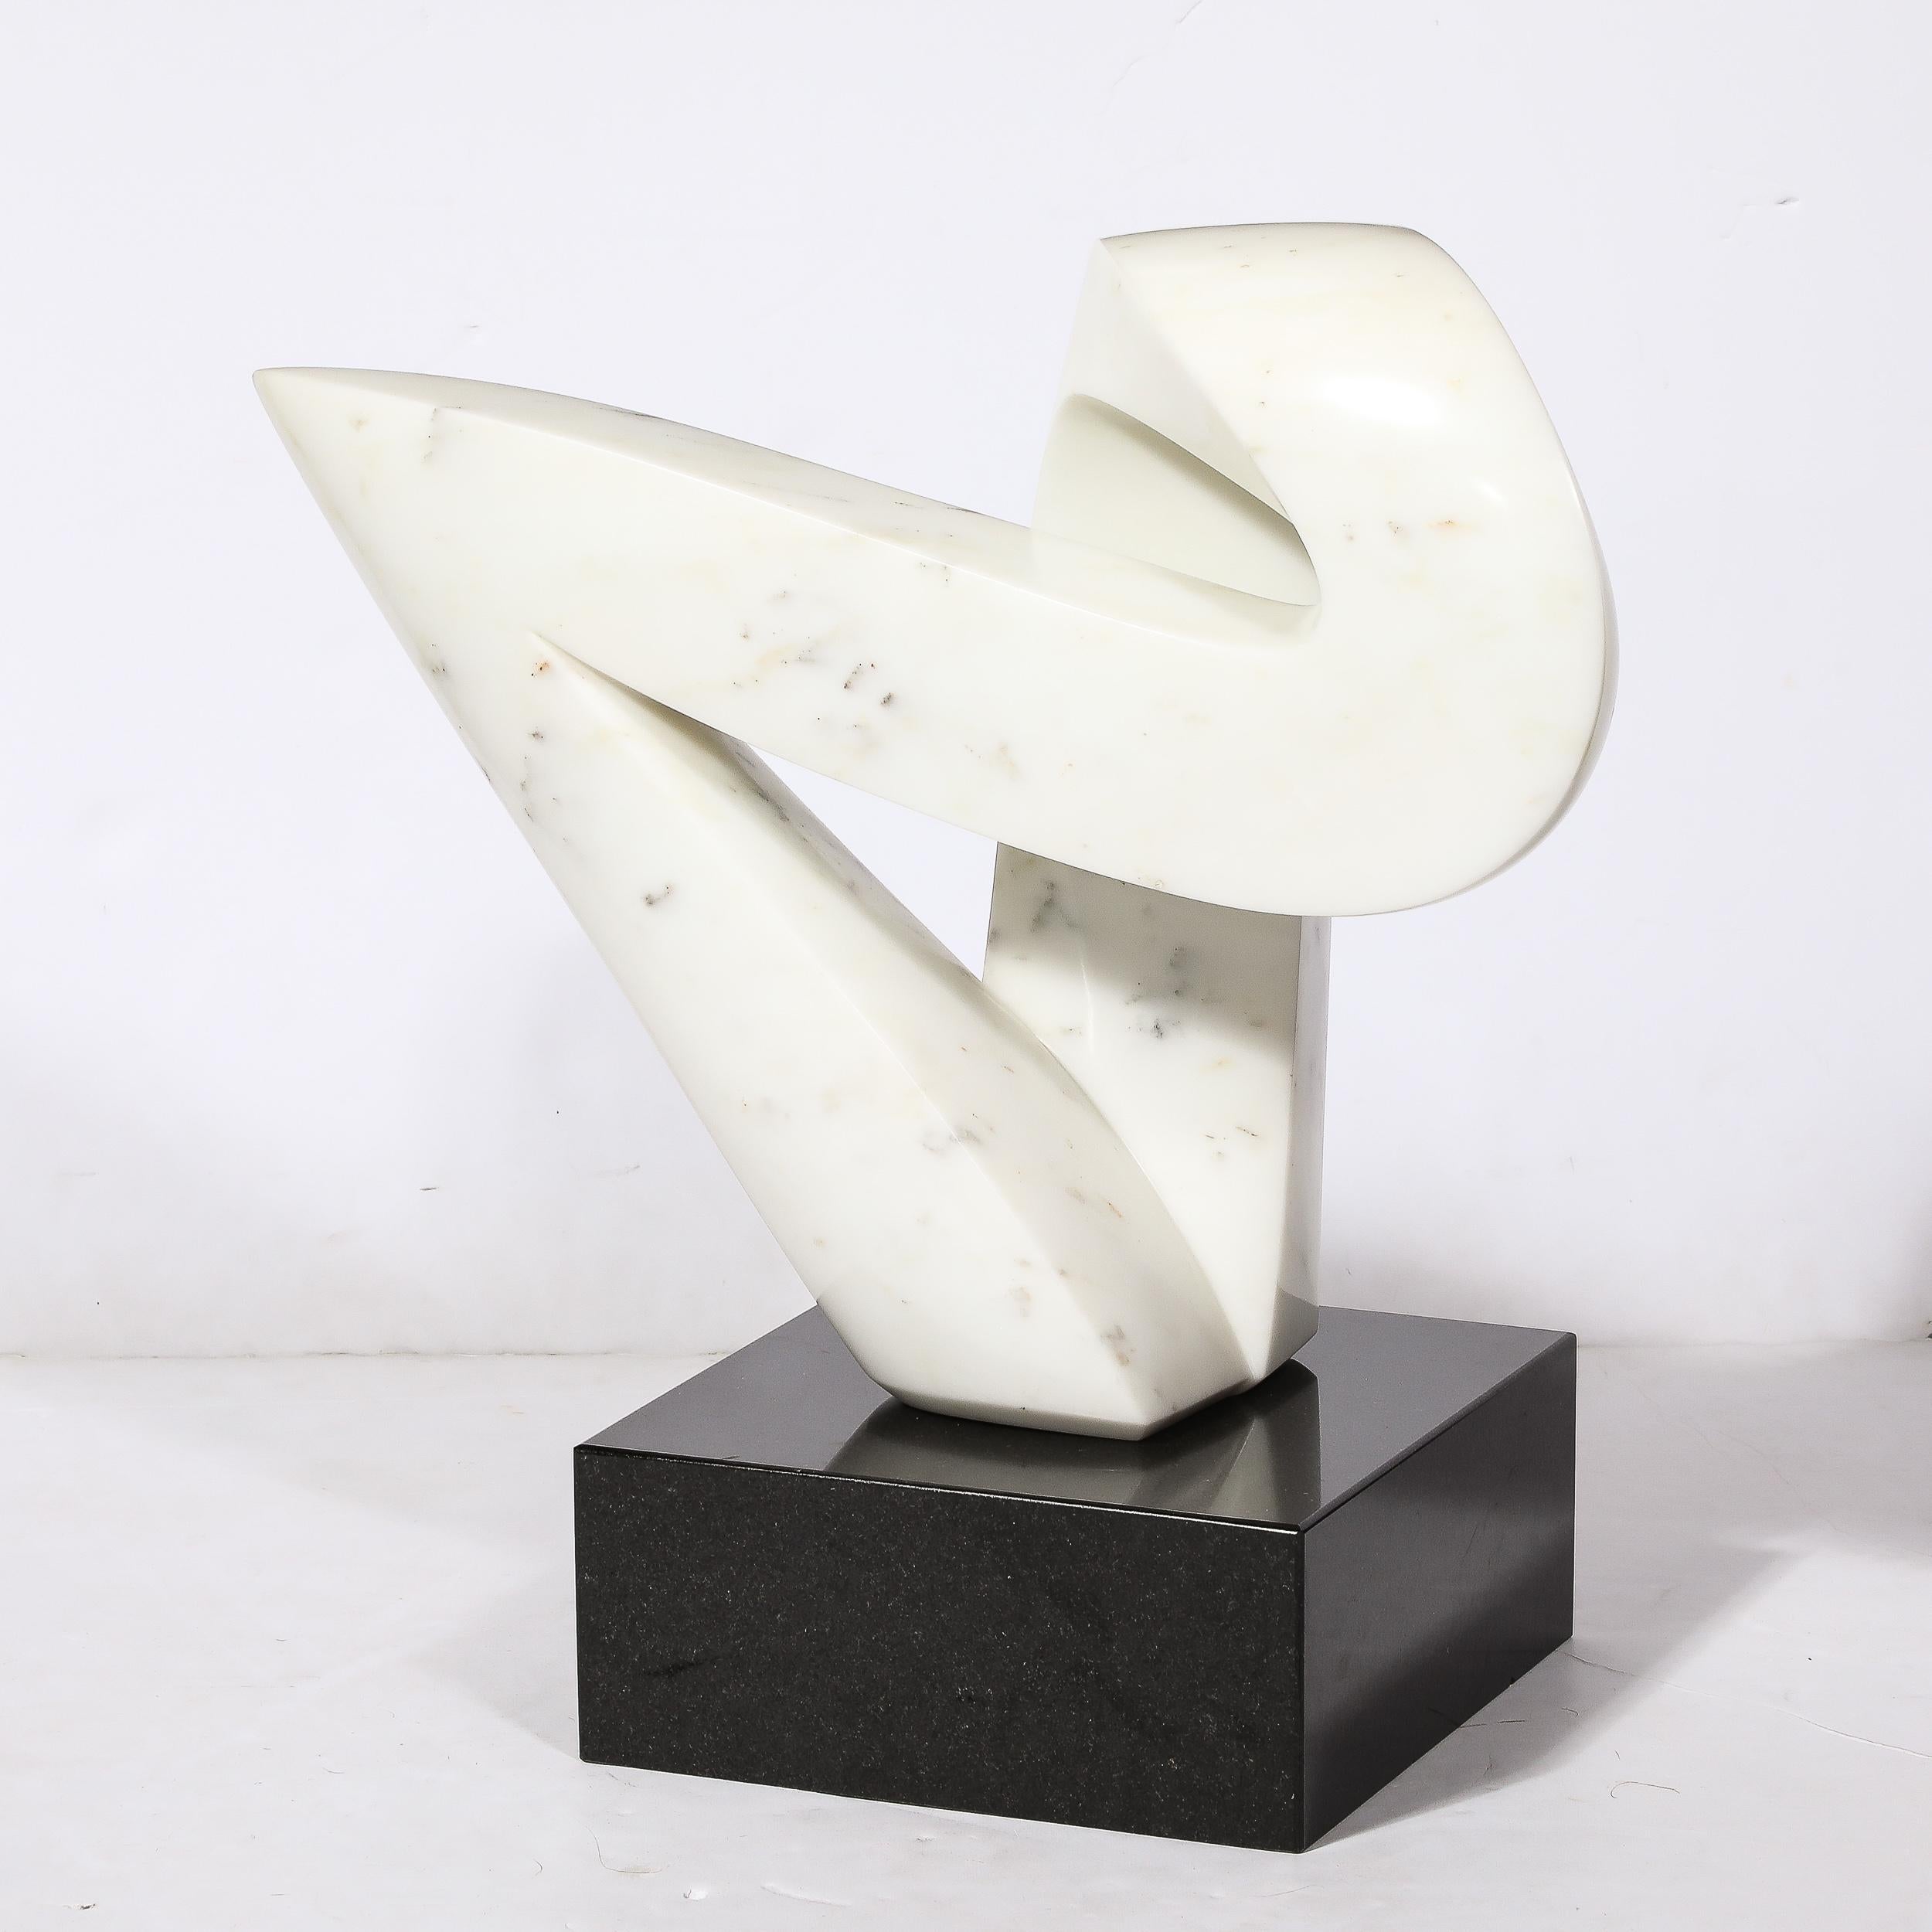 Diese elegante, kühne abstrakte Skulptur aus Carrara-Marmor aus der Mitte des Jahrhunderts stammt aus den Vereinigten Staaten, CIRCA 1970. Eine abstrahierte geometrische Form mit einem bemerkenswerten Sinn für Bewegung und Rhythmus. Das Stück bildet